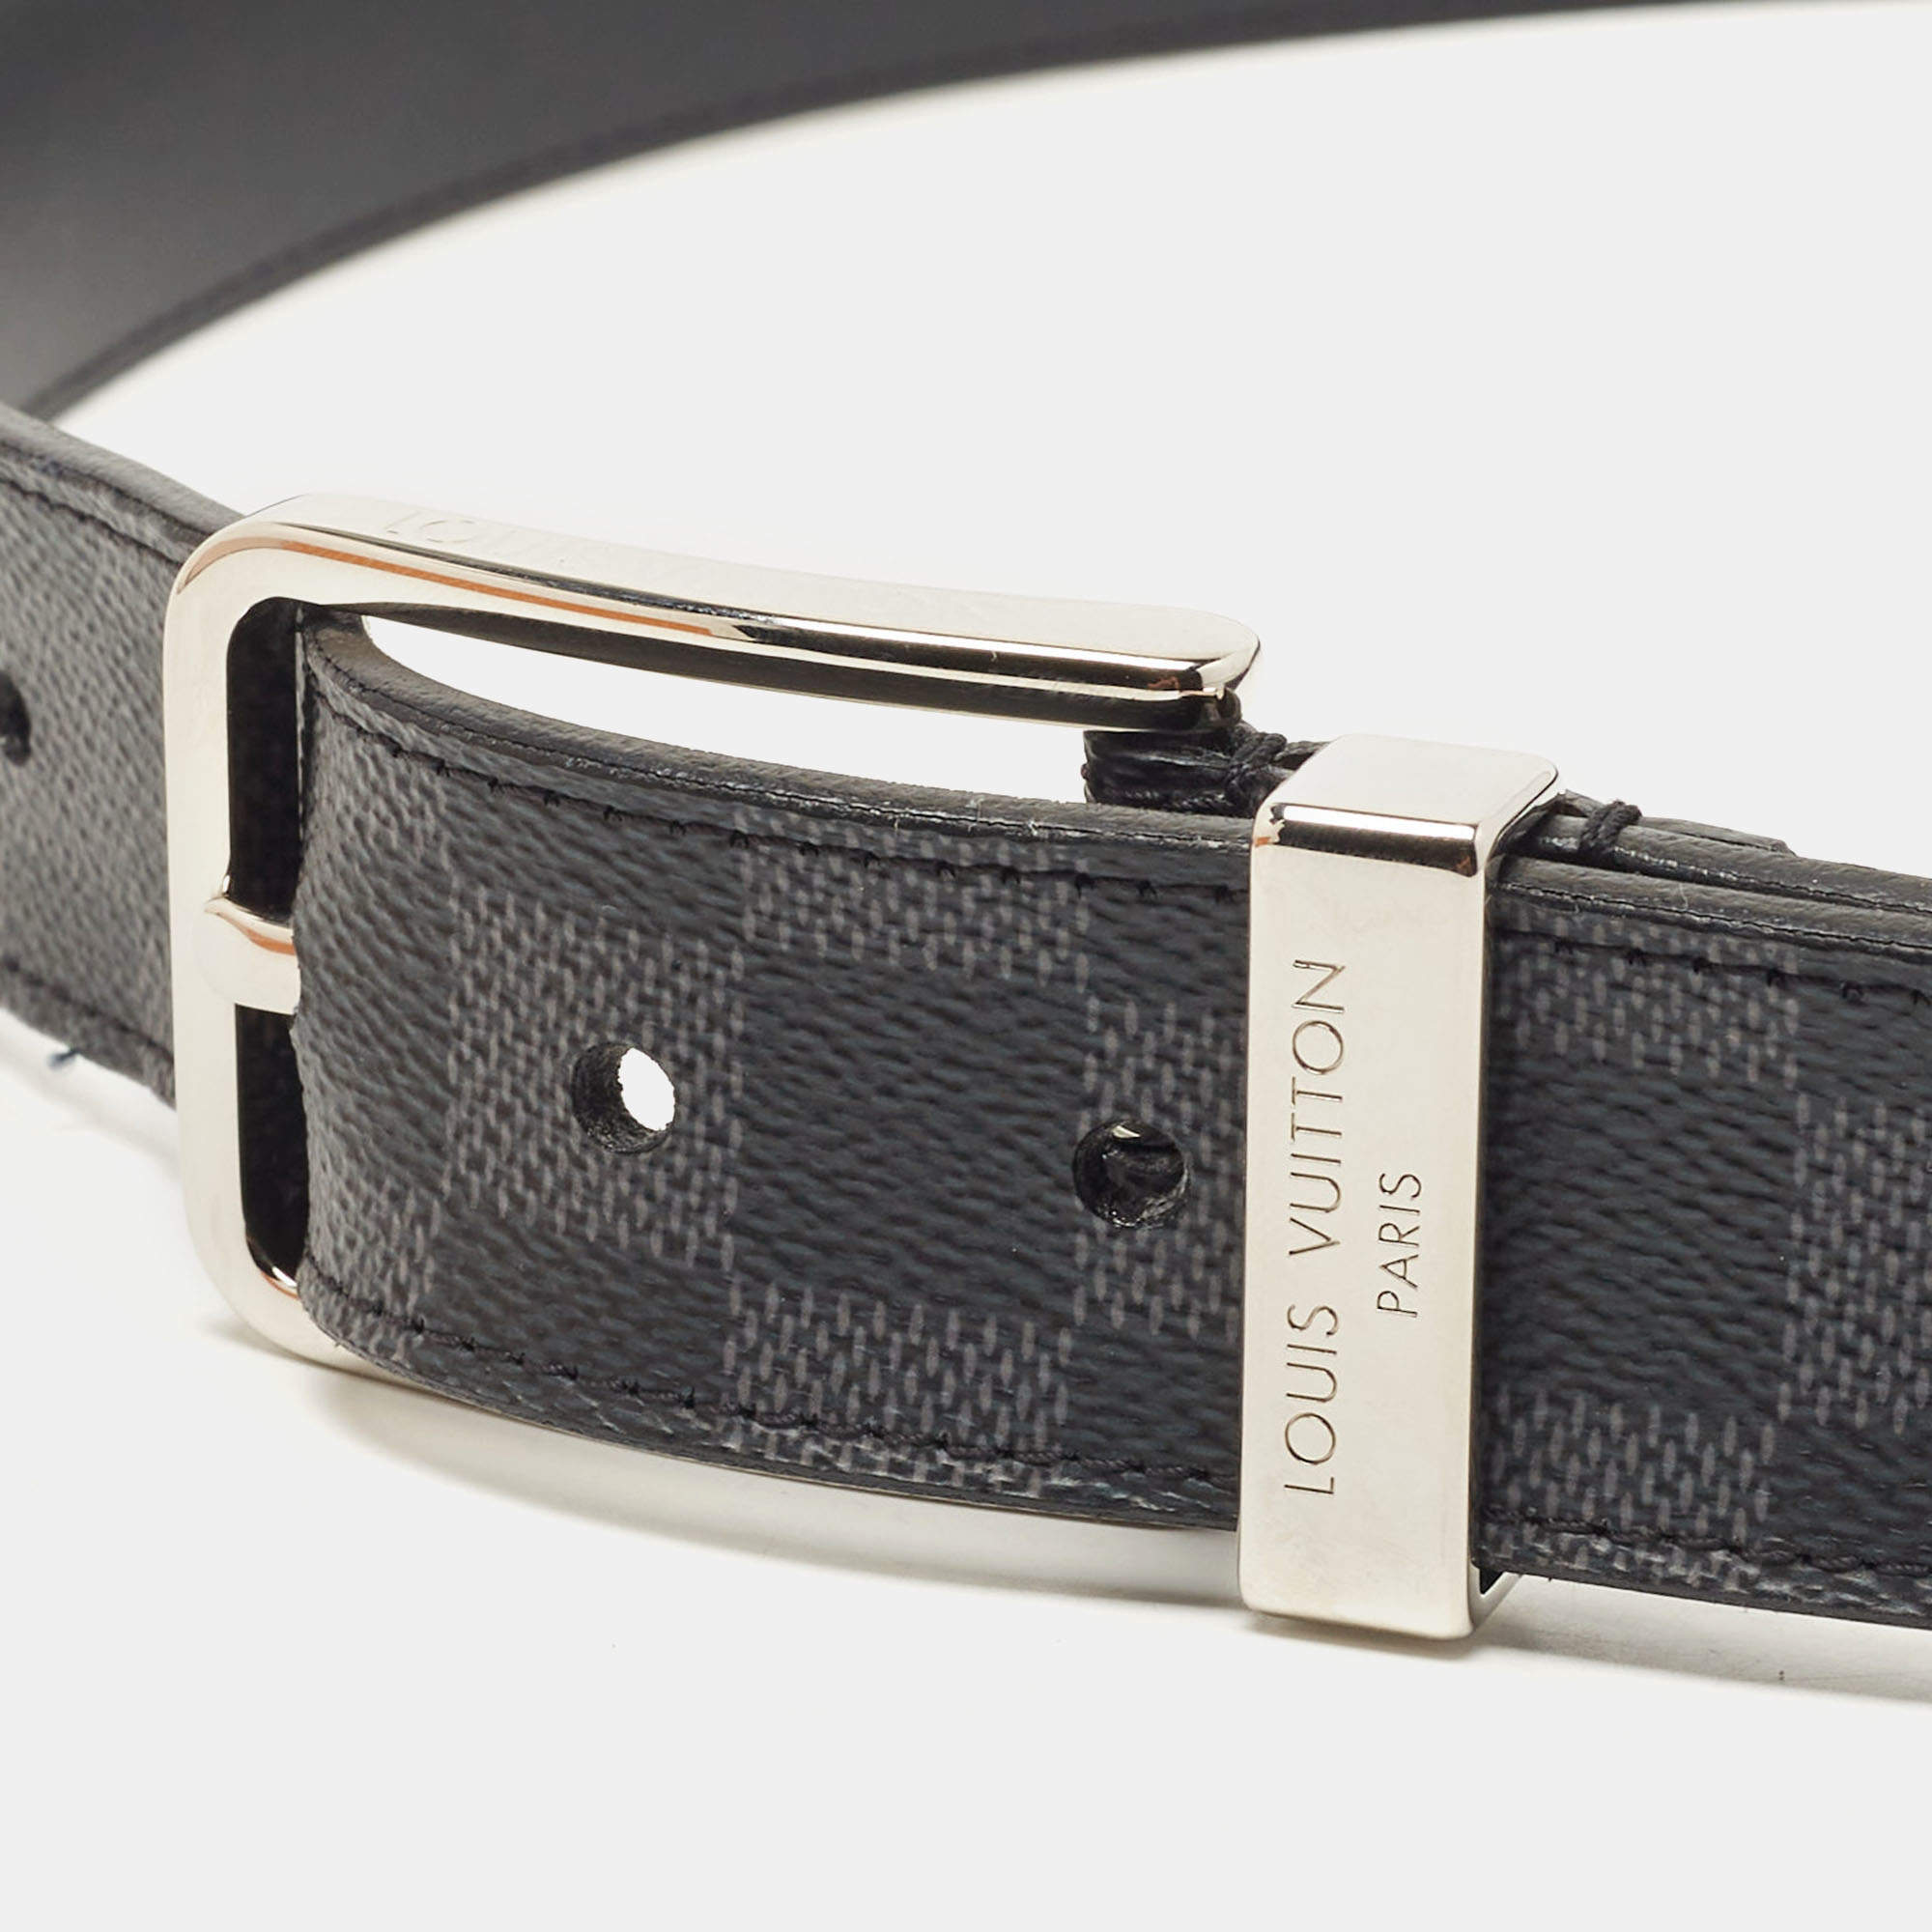 Louis Vuitton Pont Neuf 35mm Damier Graphite Pattern Belt - Black Belts,  Accessories - LOU726800